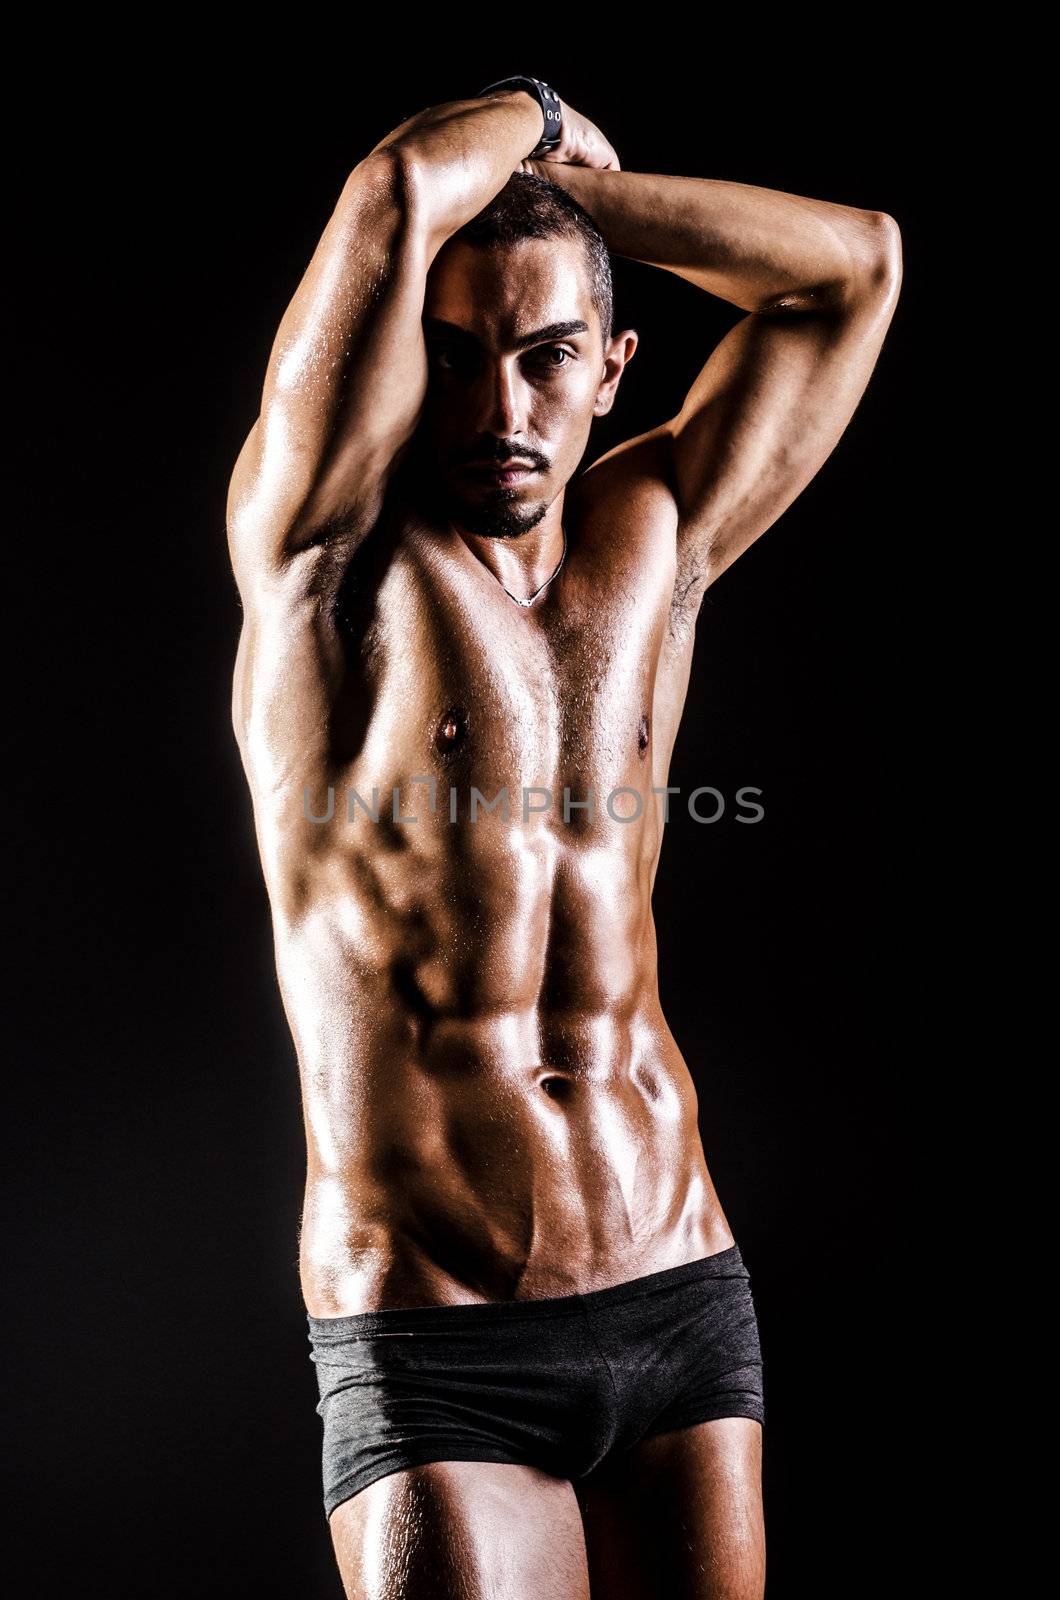 Bodybuilder with muscular body by Elnur